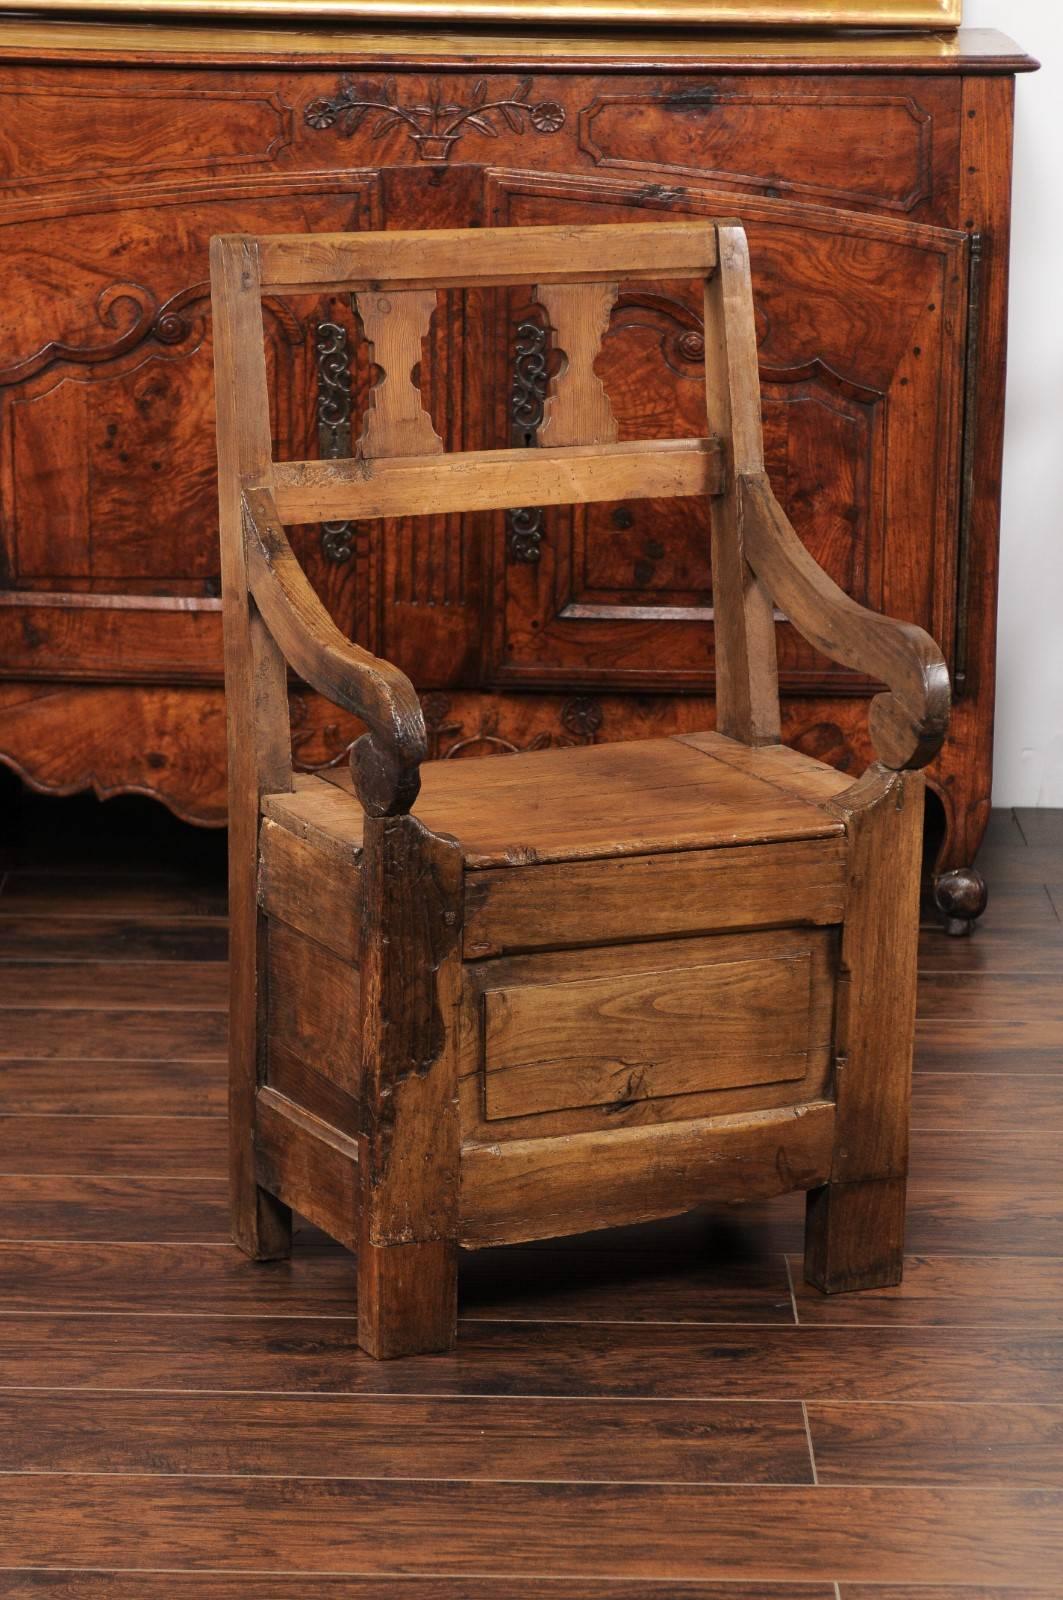 Ein englischer Stuhl aus Kiefernholz aus dem frühen 19. Jahrhundert, mit durchbrochener Rückenlehne, geschwungenen Armlehnen und Klappsitz. Dieser rustikale Landhaussessel hat eine einfache durchbrochene Rückenlehne, die mit sanduhrförmigen Motiven